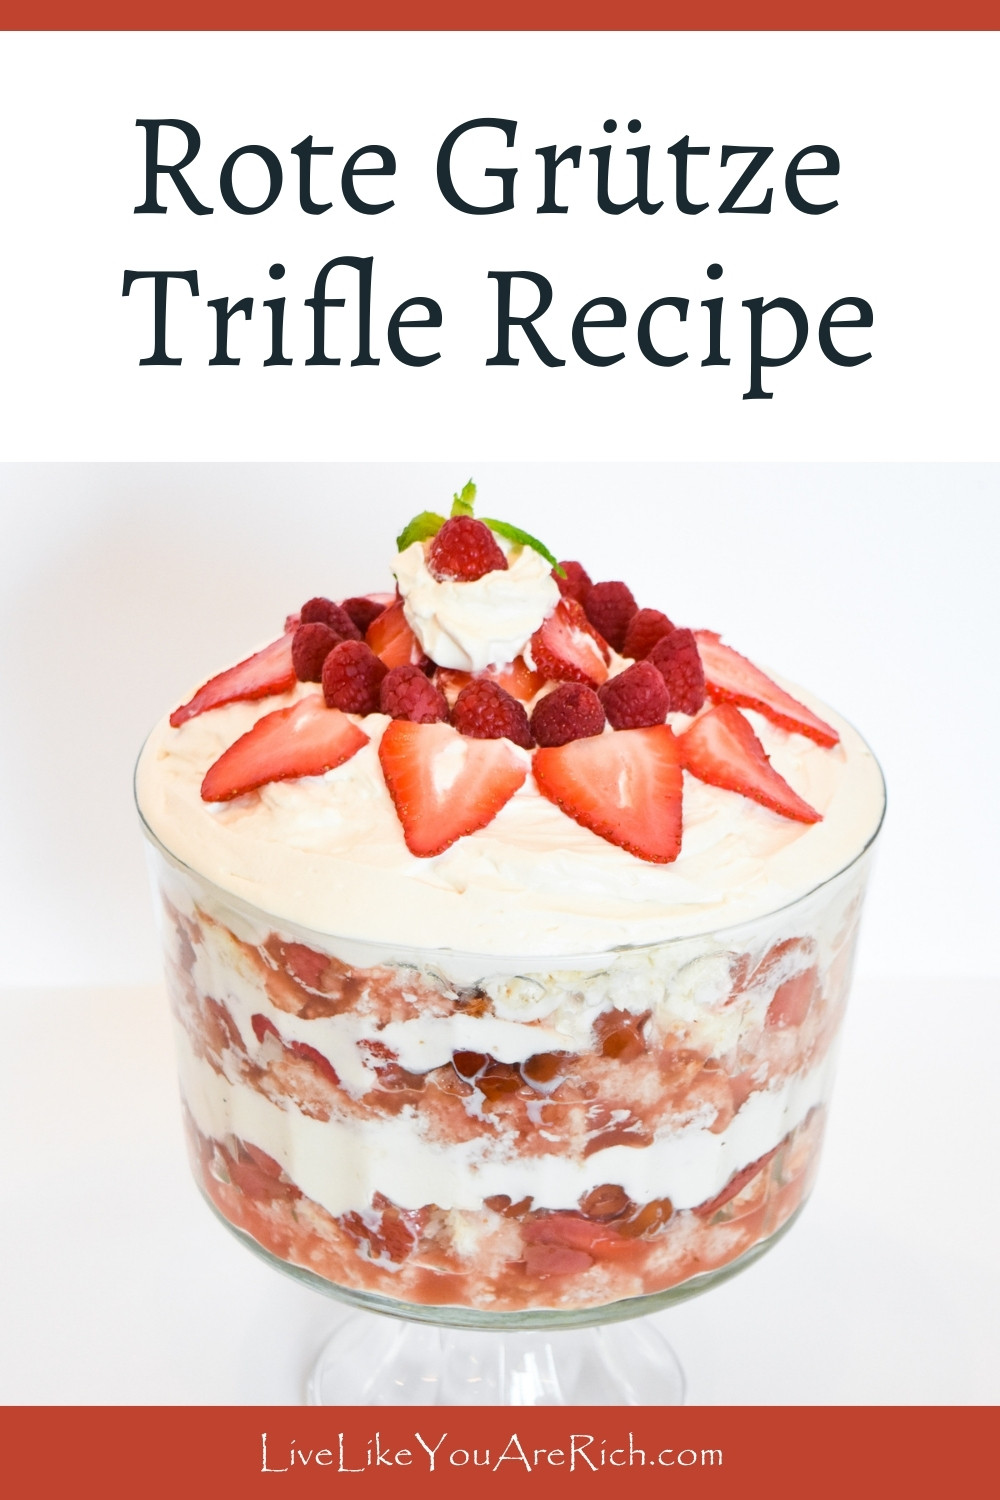 Rote Grütze Trifle Recipe.